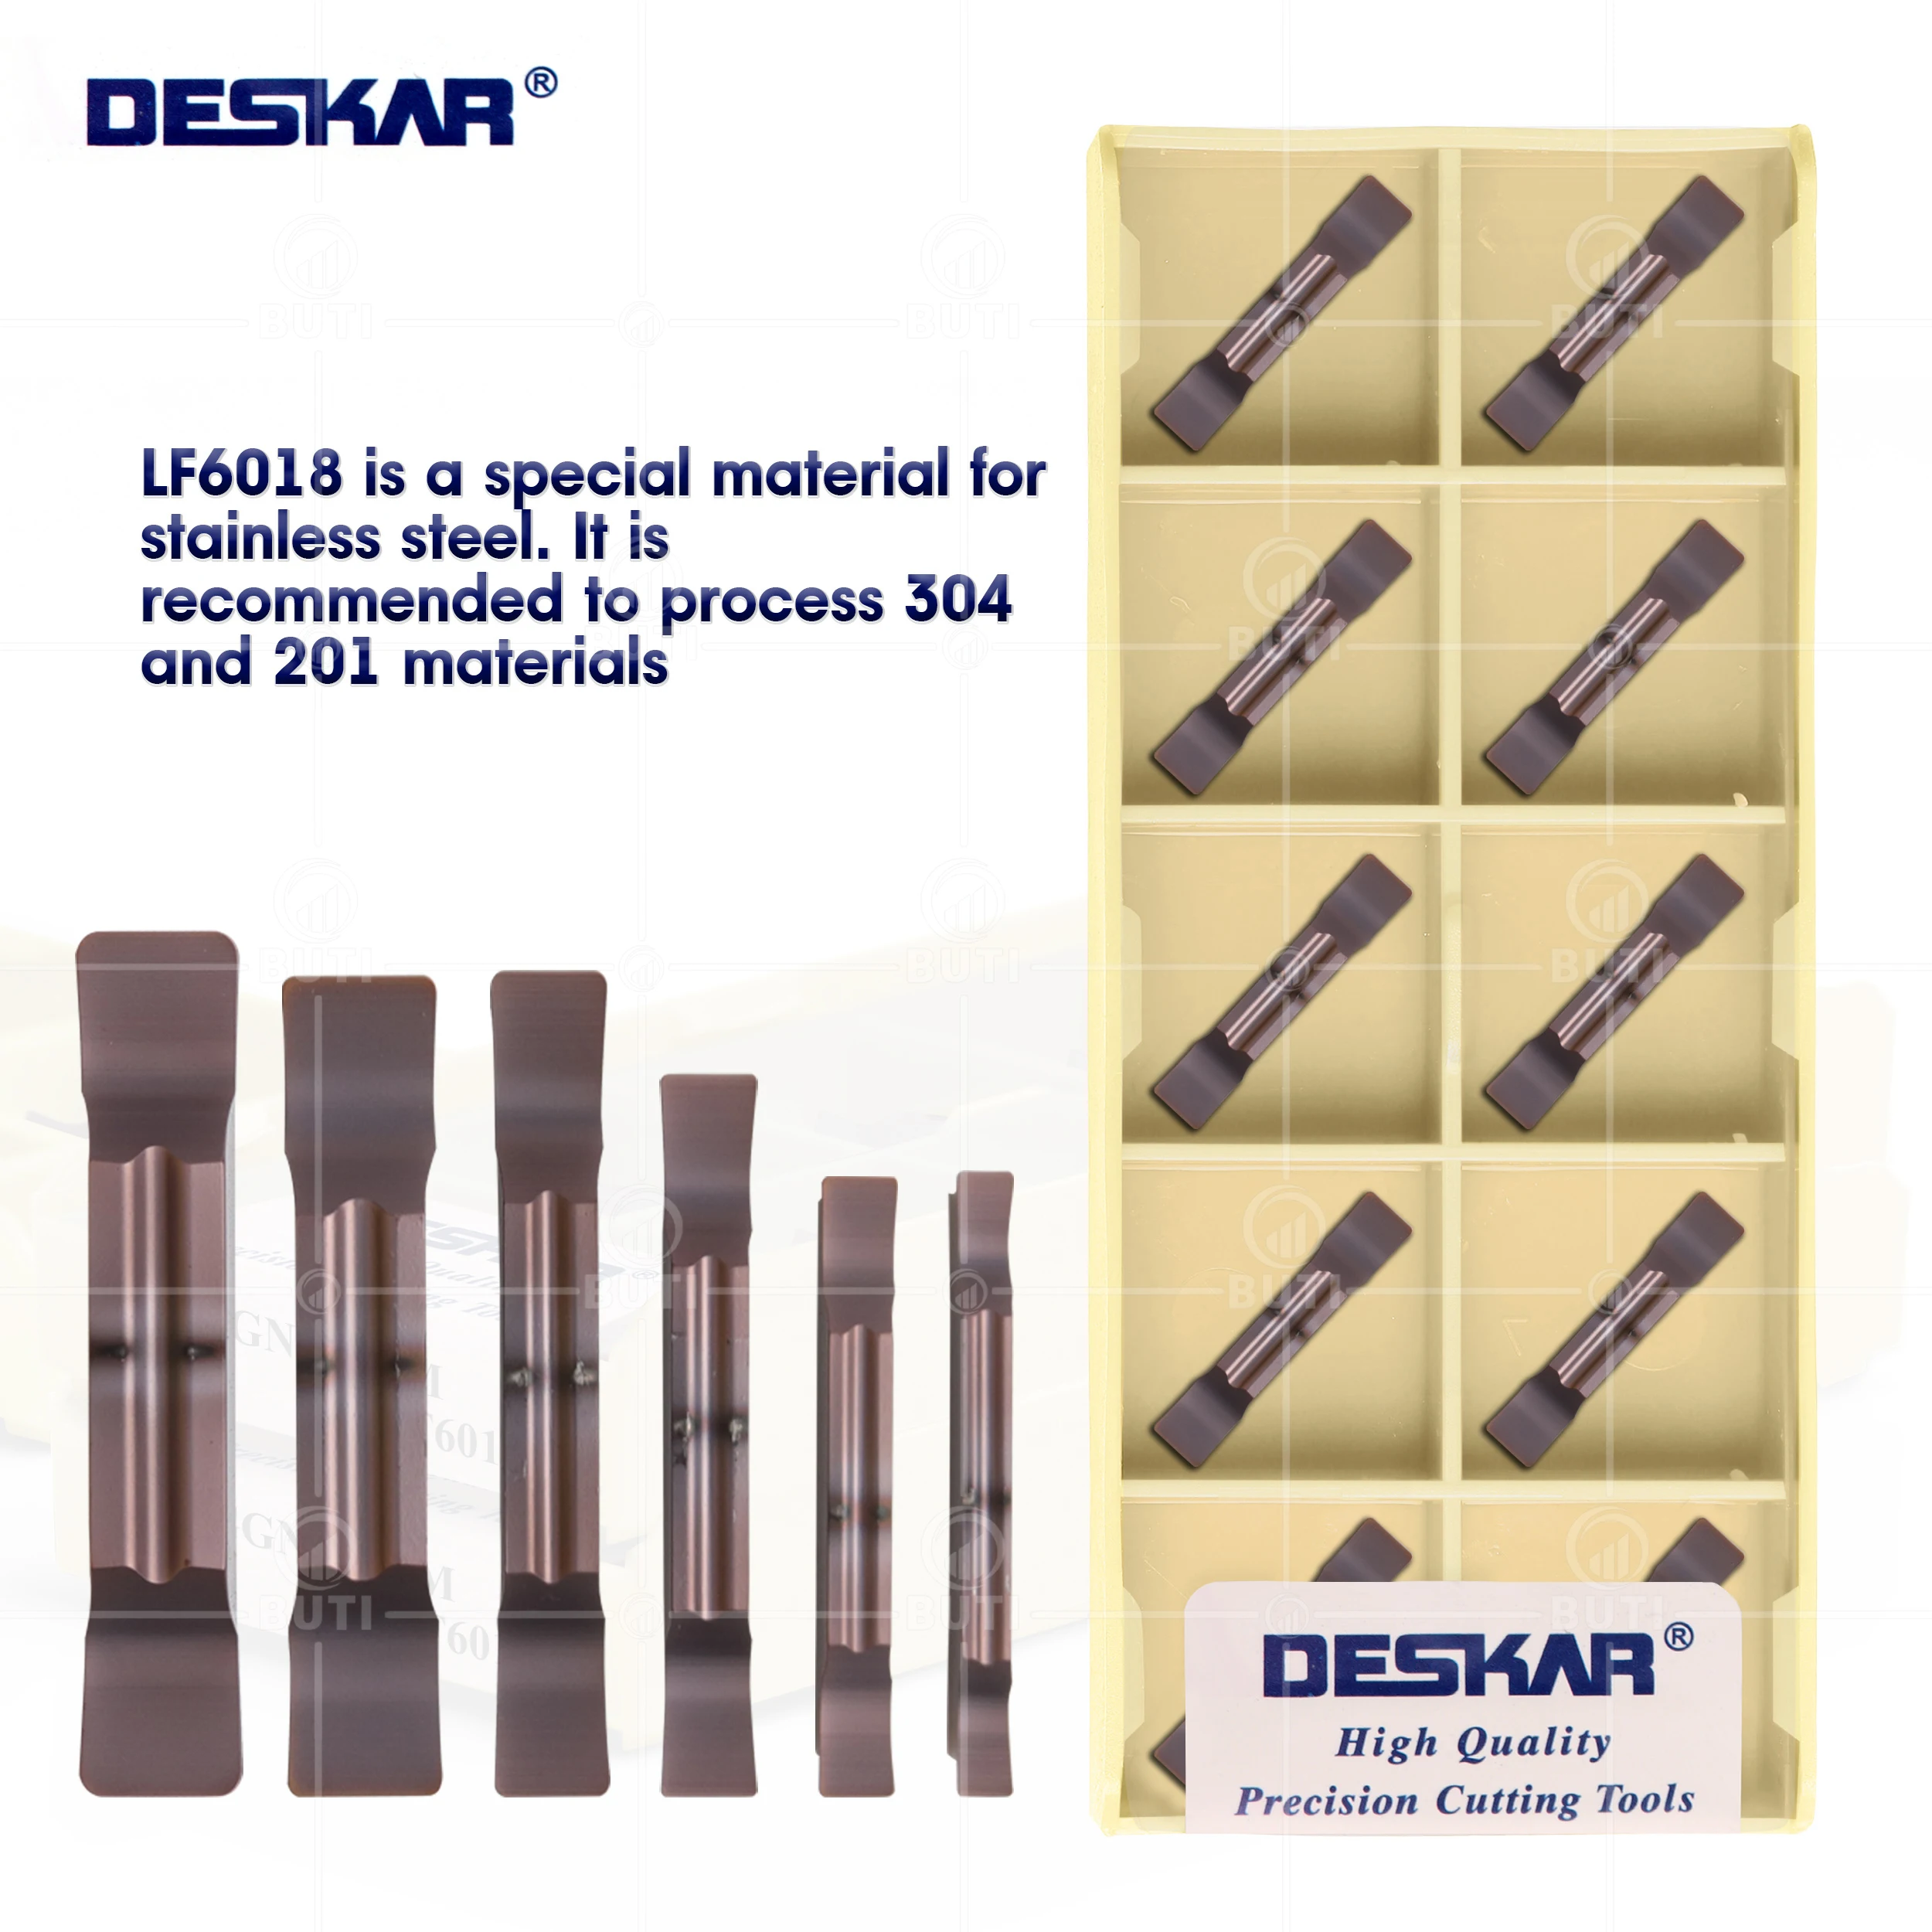 Deskar-herramientas de torneado de torno CNC, insertos de ranurado de carburo para acero inoxidable, MGGN150, 100%, 200, 250, 300, 500-JM, LF6018, 400 Original